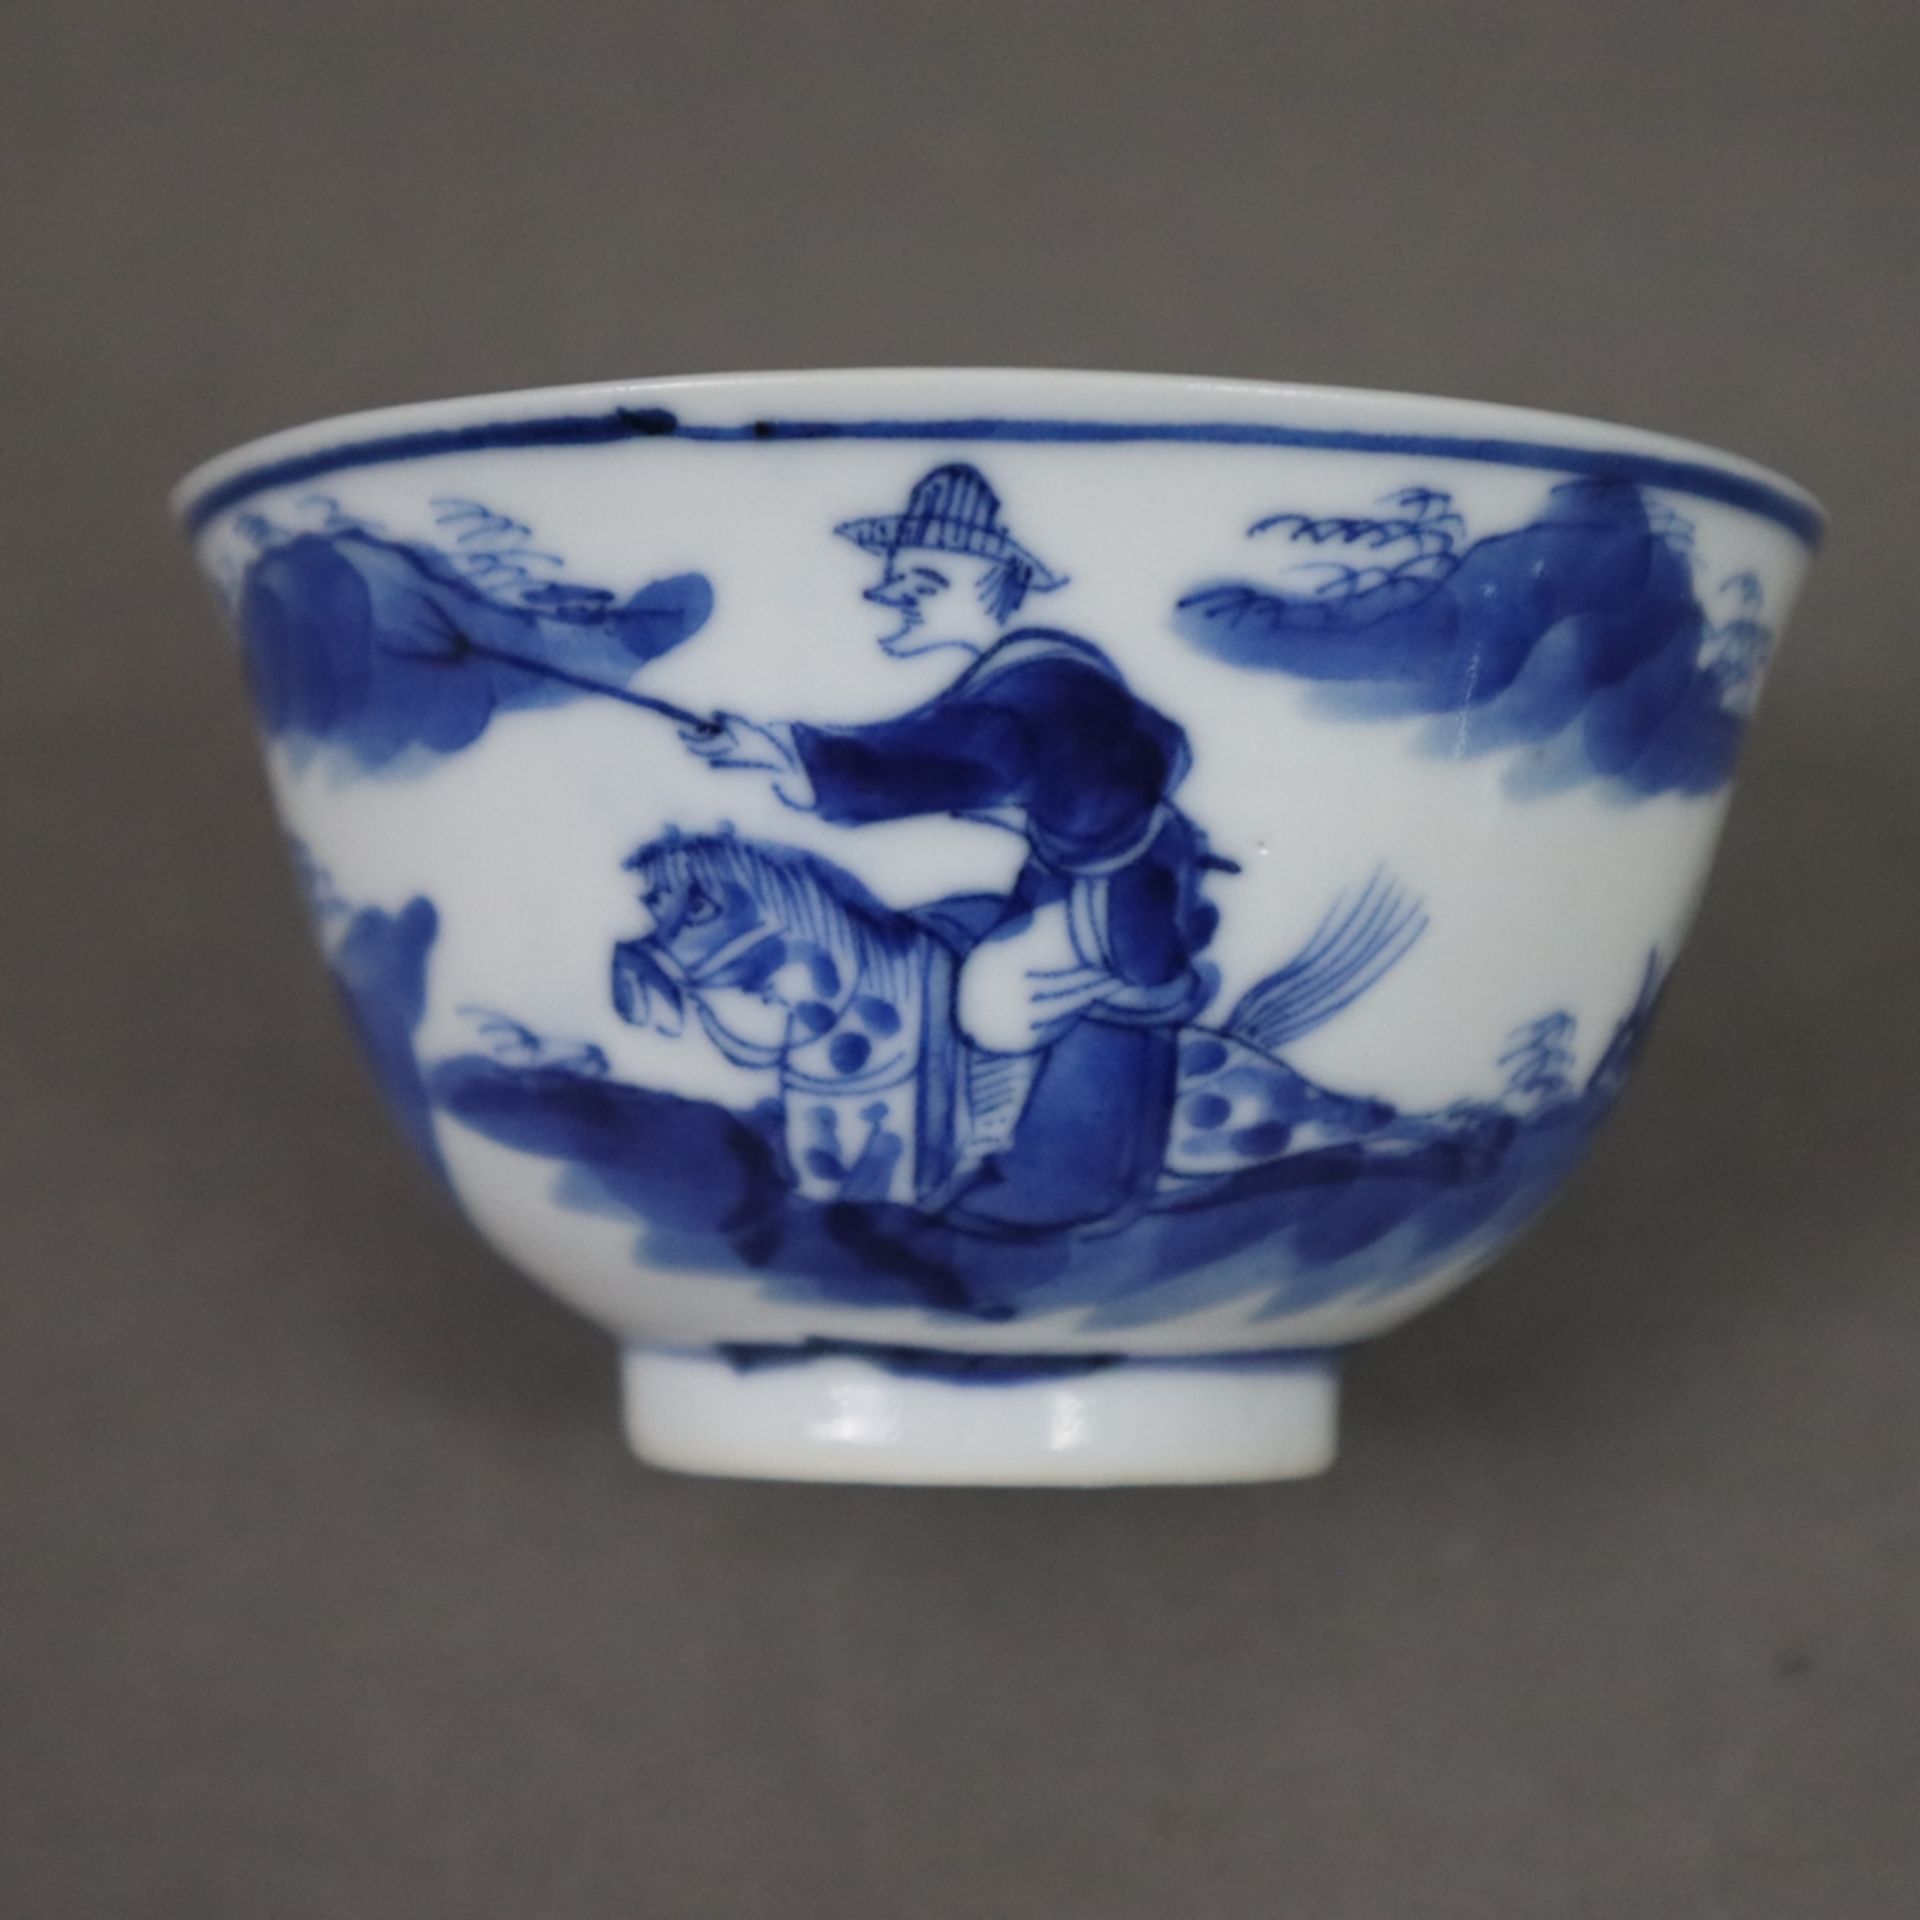 Drei Blauweiß-Koppchen und 3 Tellerchen - China, Porzellan, auf der Wandung Landschaften mit beritt - Bild 3 aus 11